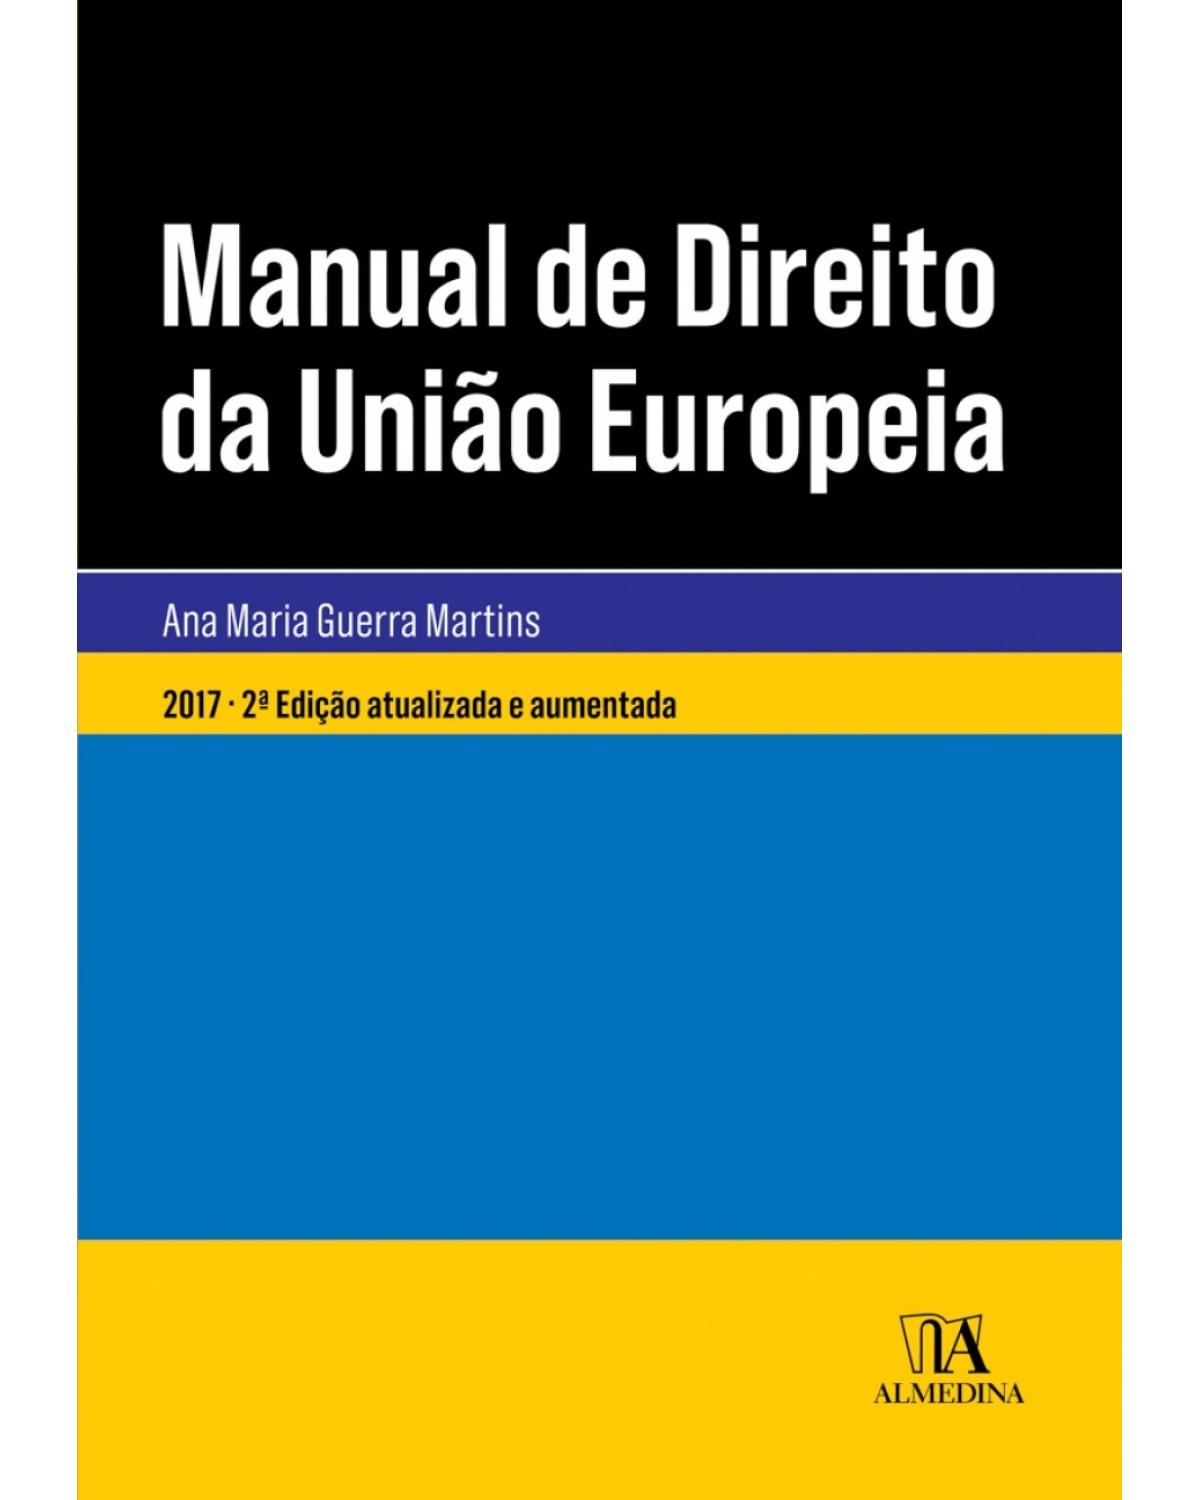 Manual de direito da União Européia - Após o Tratado de Lisboa - 2ª Edição | 2017